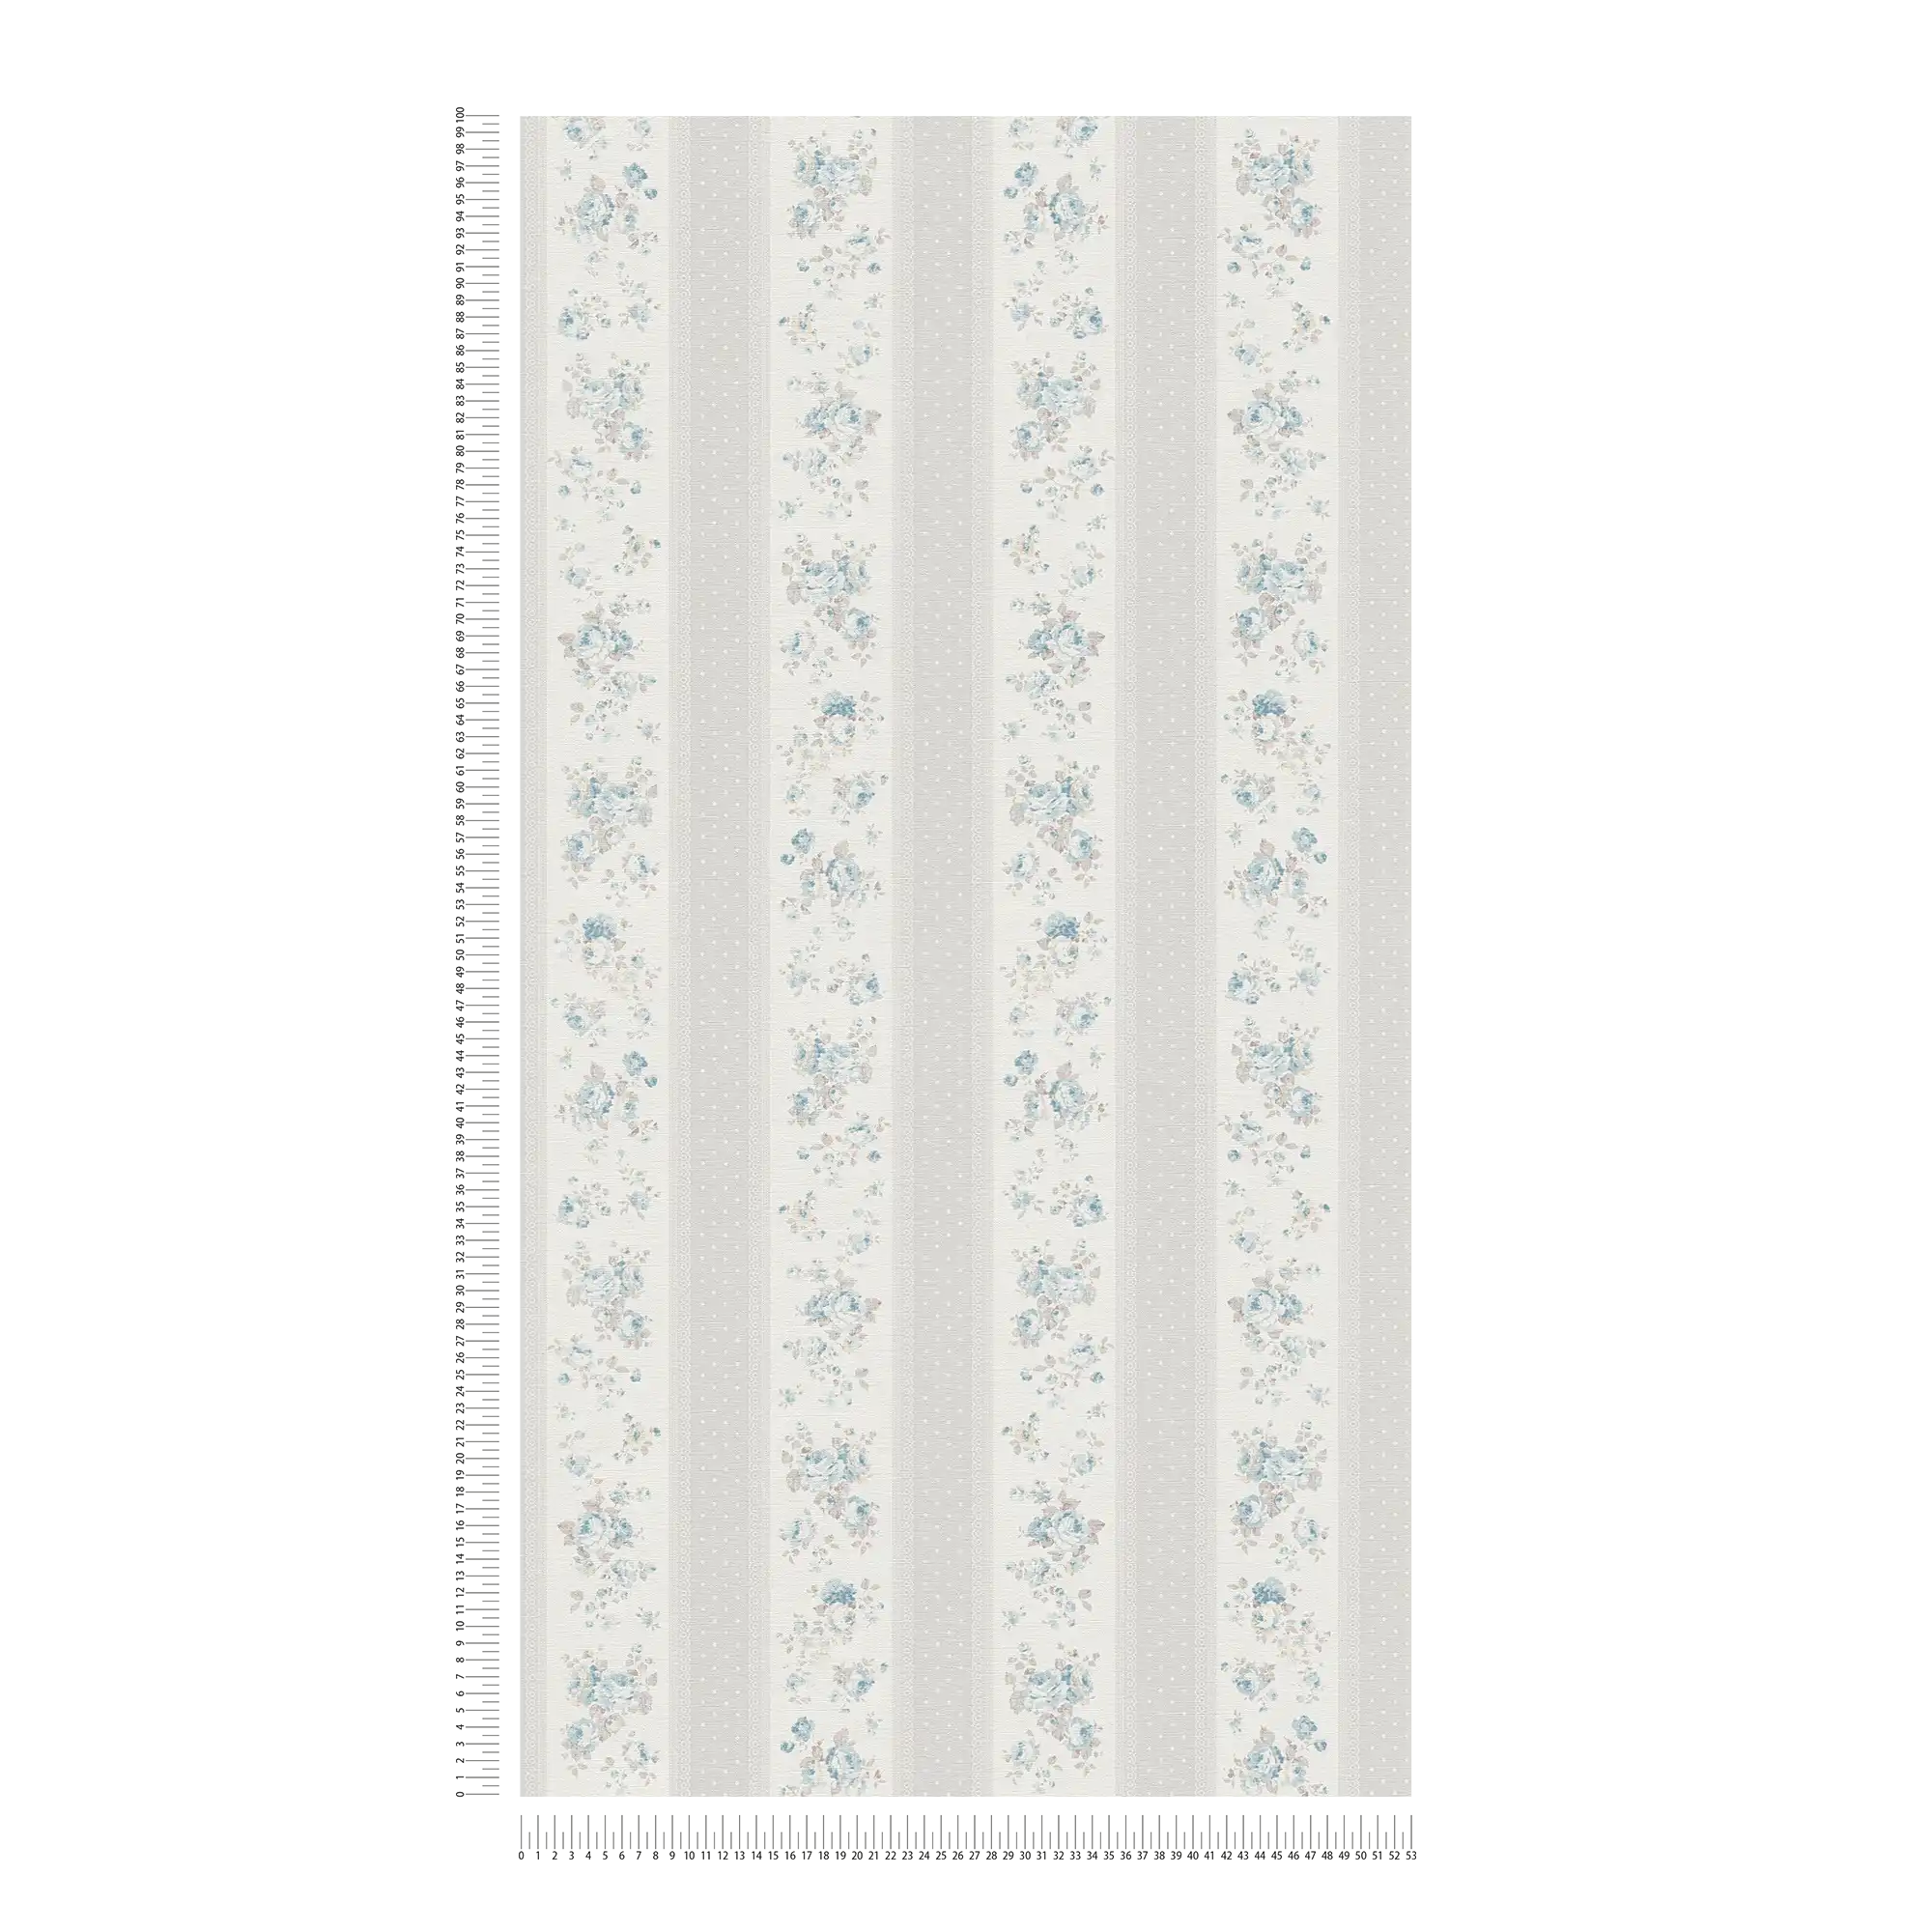             Papel pintado no tejido con rayas punteadas y florales - gris, blanco, azul
        